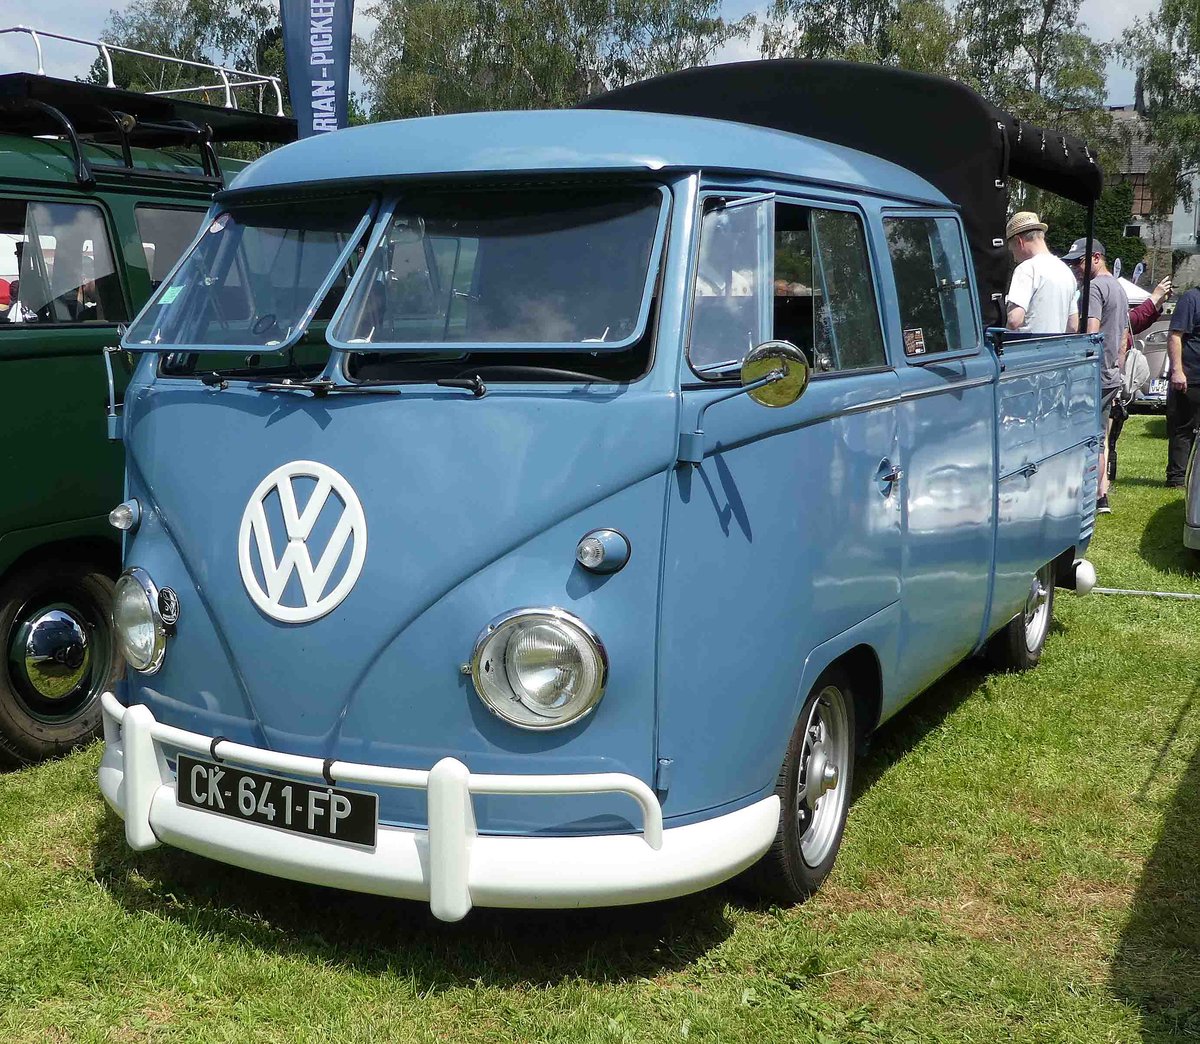 =VW T1 Doppelkabiner mit Ladepritsche steht auf dem Ausstellungsgelände in Bad Camberg anl. LOTTERMANN-Bullitreffen im Juni 2019